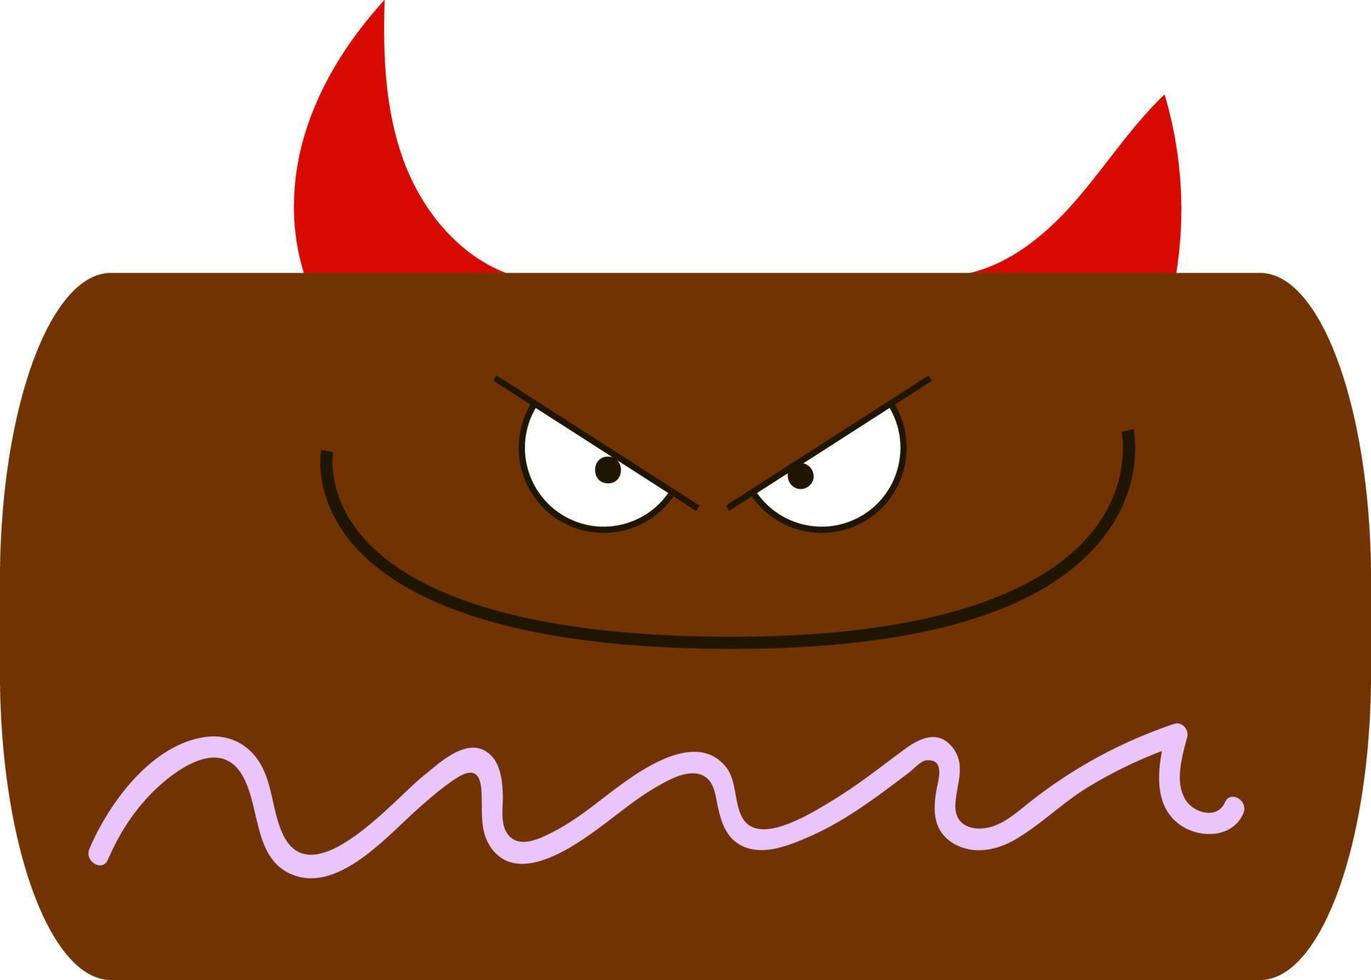 Devil cake, illustration, vector on white background.